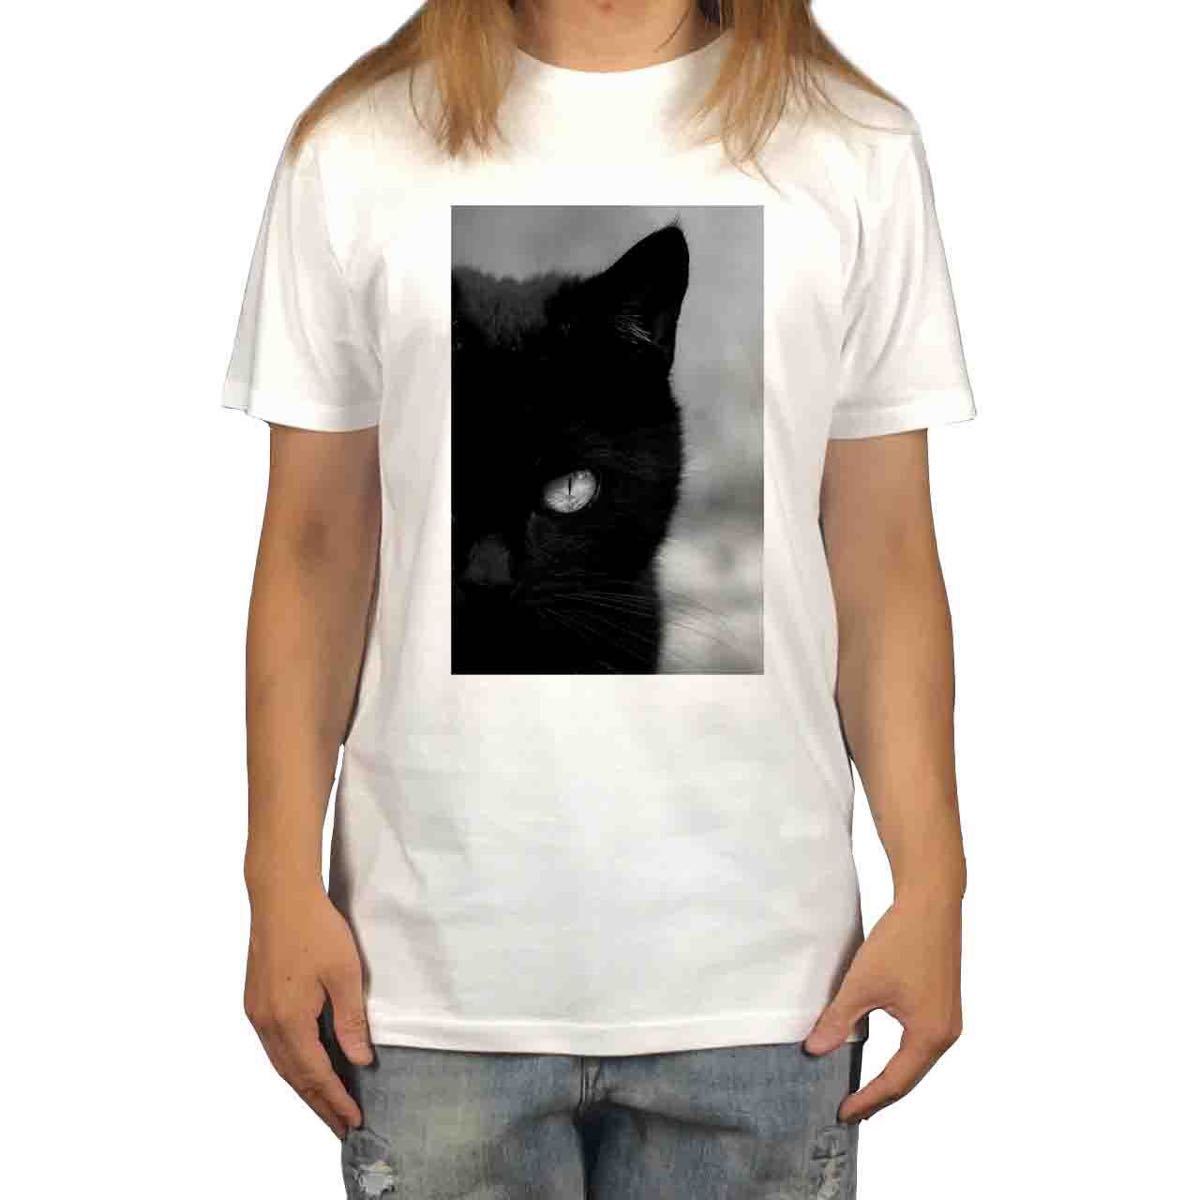 新品 黒猫 クロネコ ブラックキャット 睨み 動物 アニマル プリント Tシャツ S M L XL ビッグ オーバー サイズ XXL~5XL ロンT パーカー 可